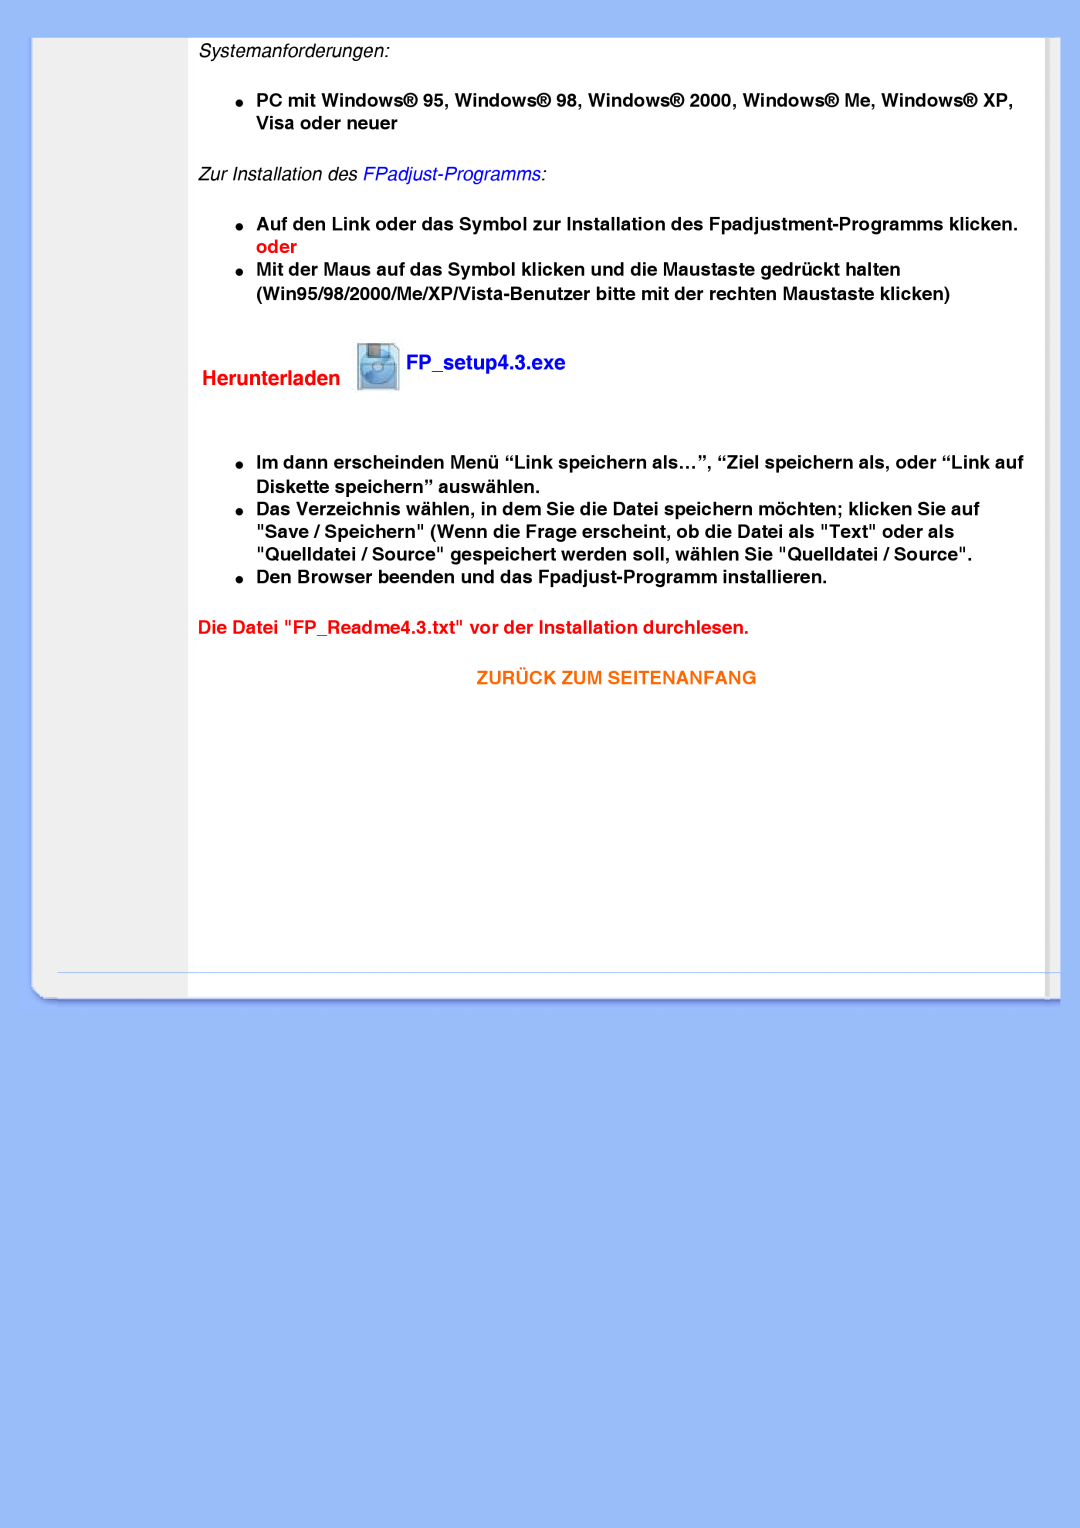 Philips 220VW8 user manual Herunterladen, FP_setup4.3.exe, Zurück Zum Seitenanfang 